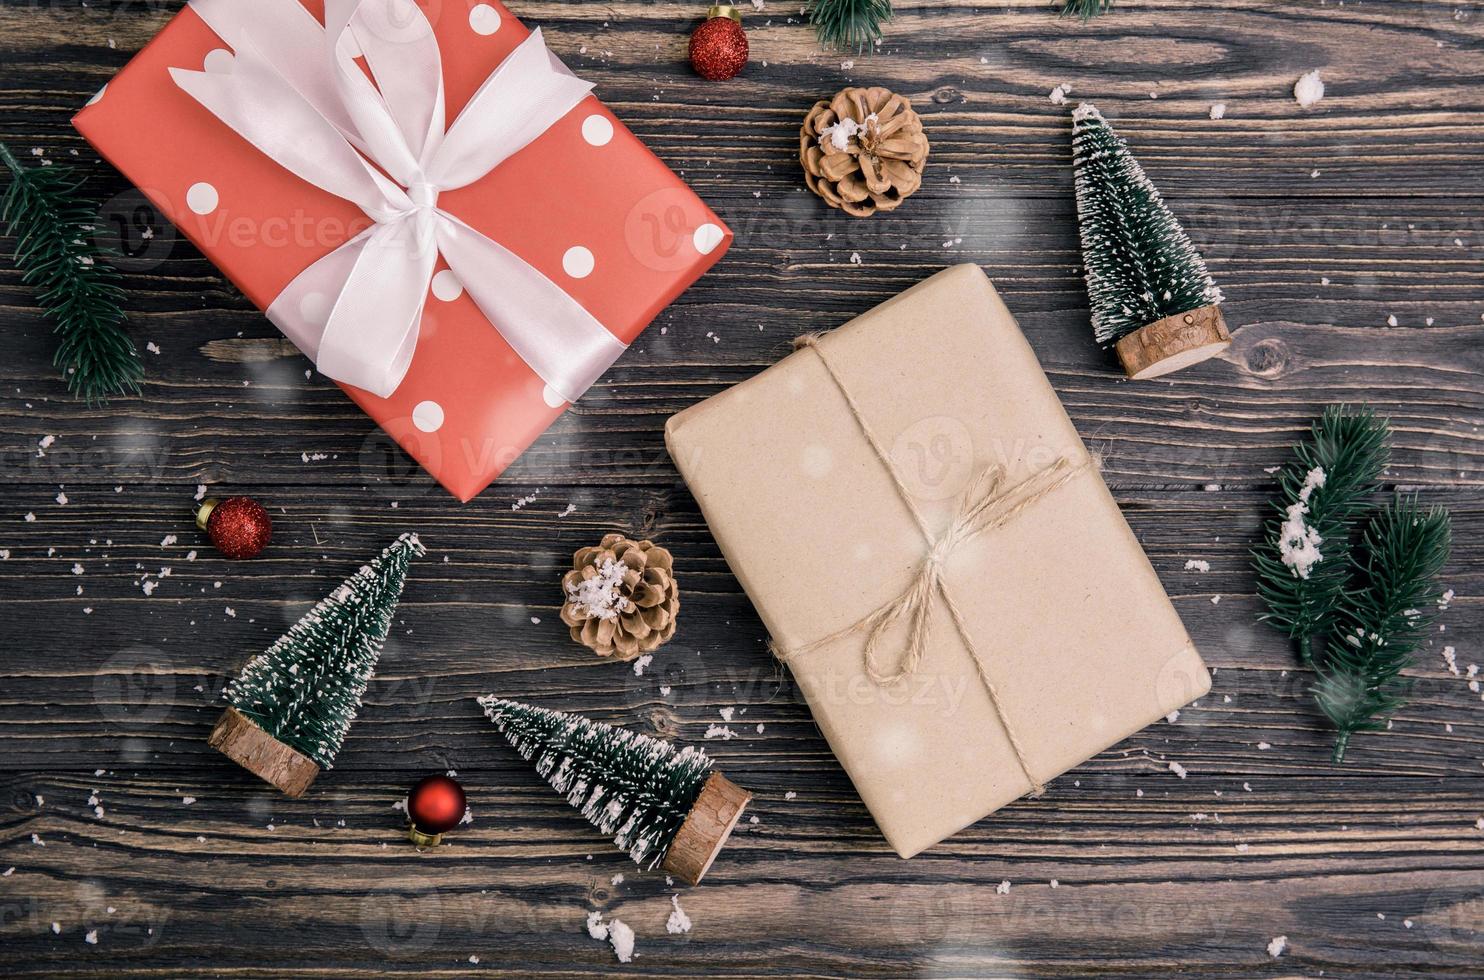 kerstvakantie compositie met rode geschenkdoos en tag decoratie op houten achtergrond, nieuwjaar en kerst of jubileum met cadeautjes op houten tafel in het seizoen, bovenaanzicht of plat leggen. foto